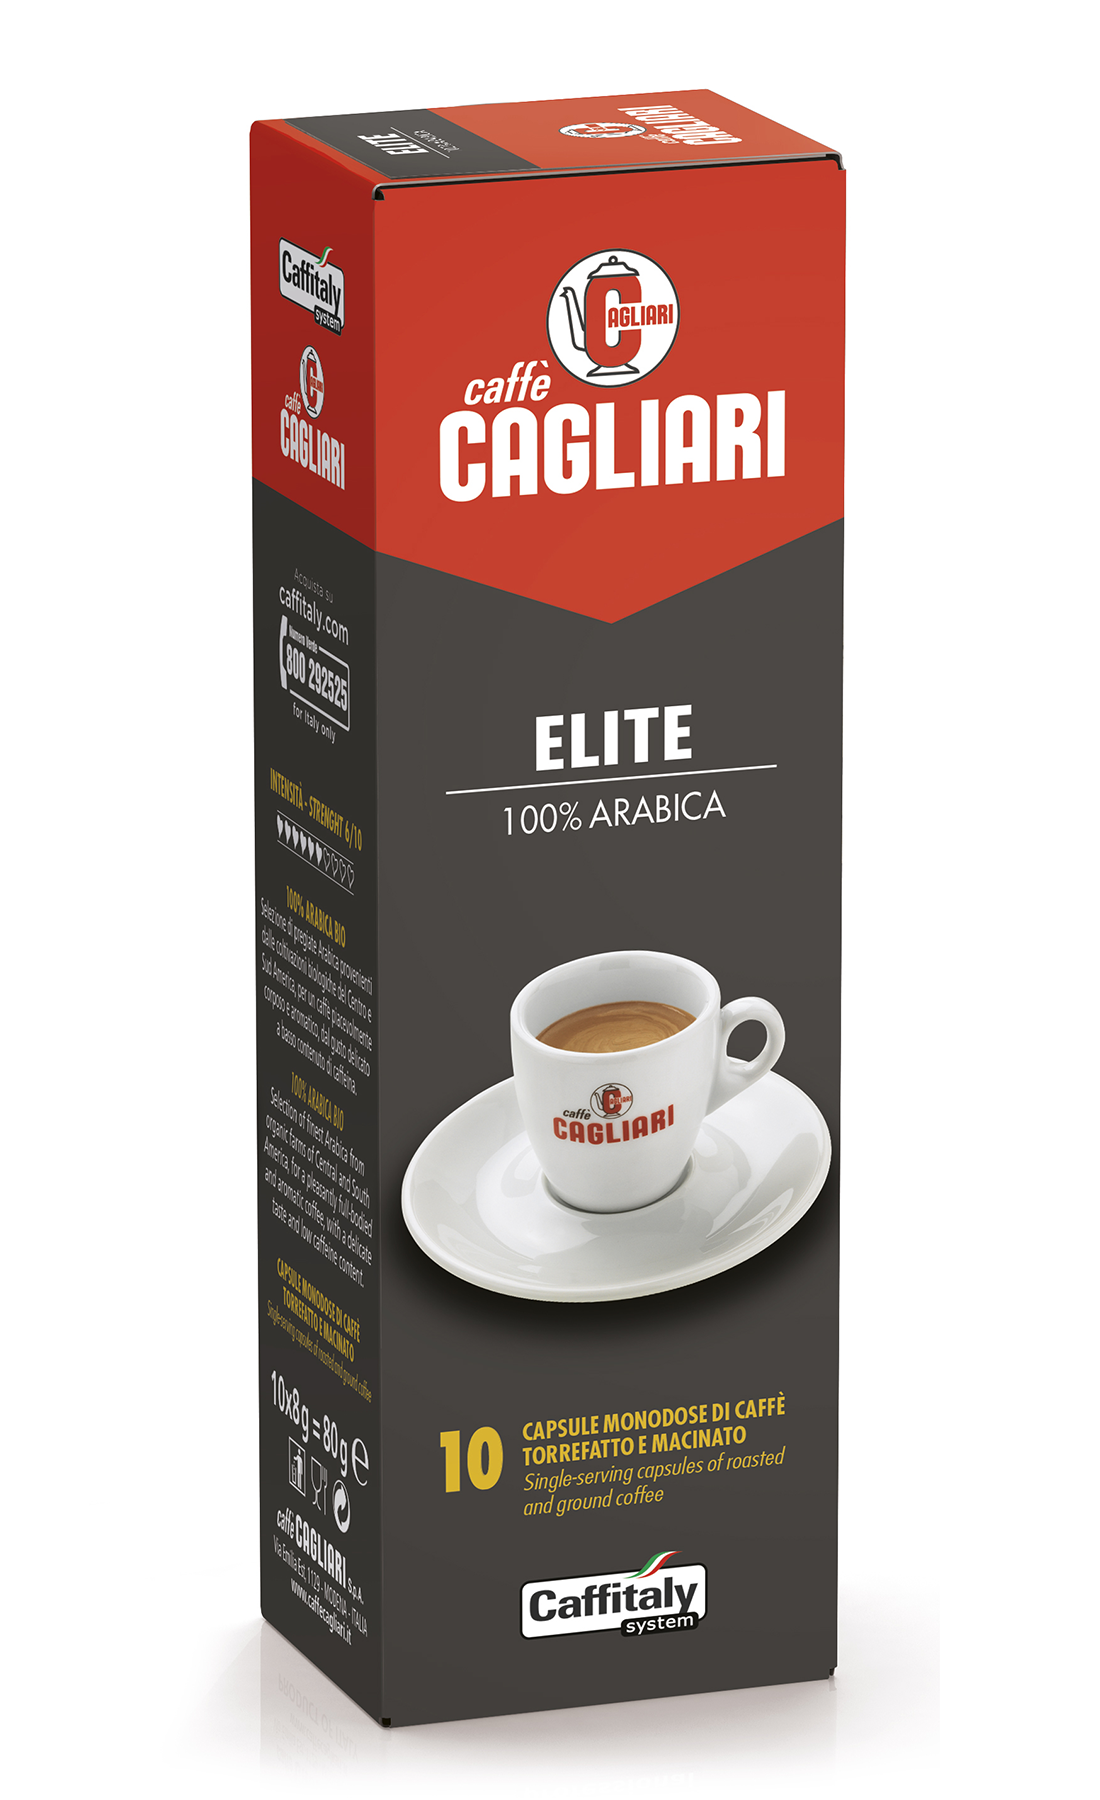 Capsule Caffè Elite 100% Arabica Caffè Cagliari – Caffitaly